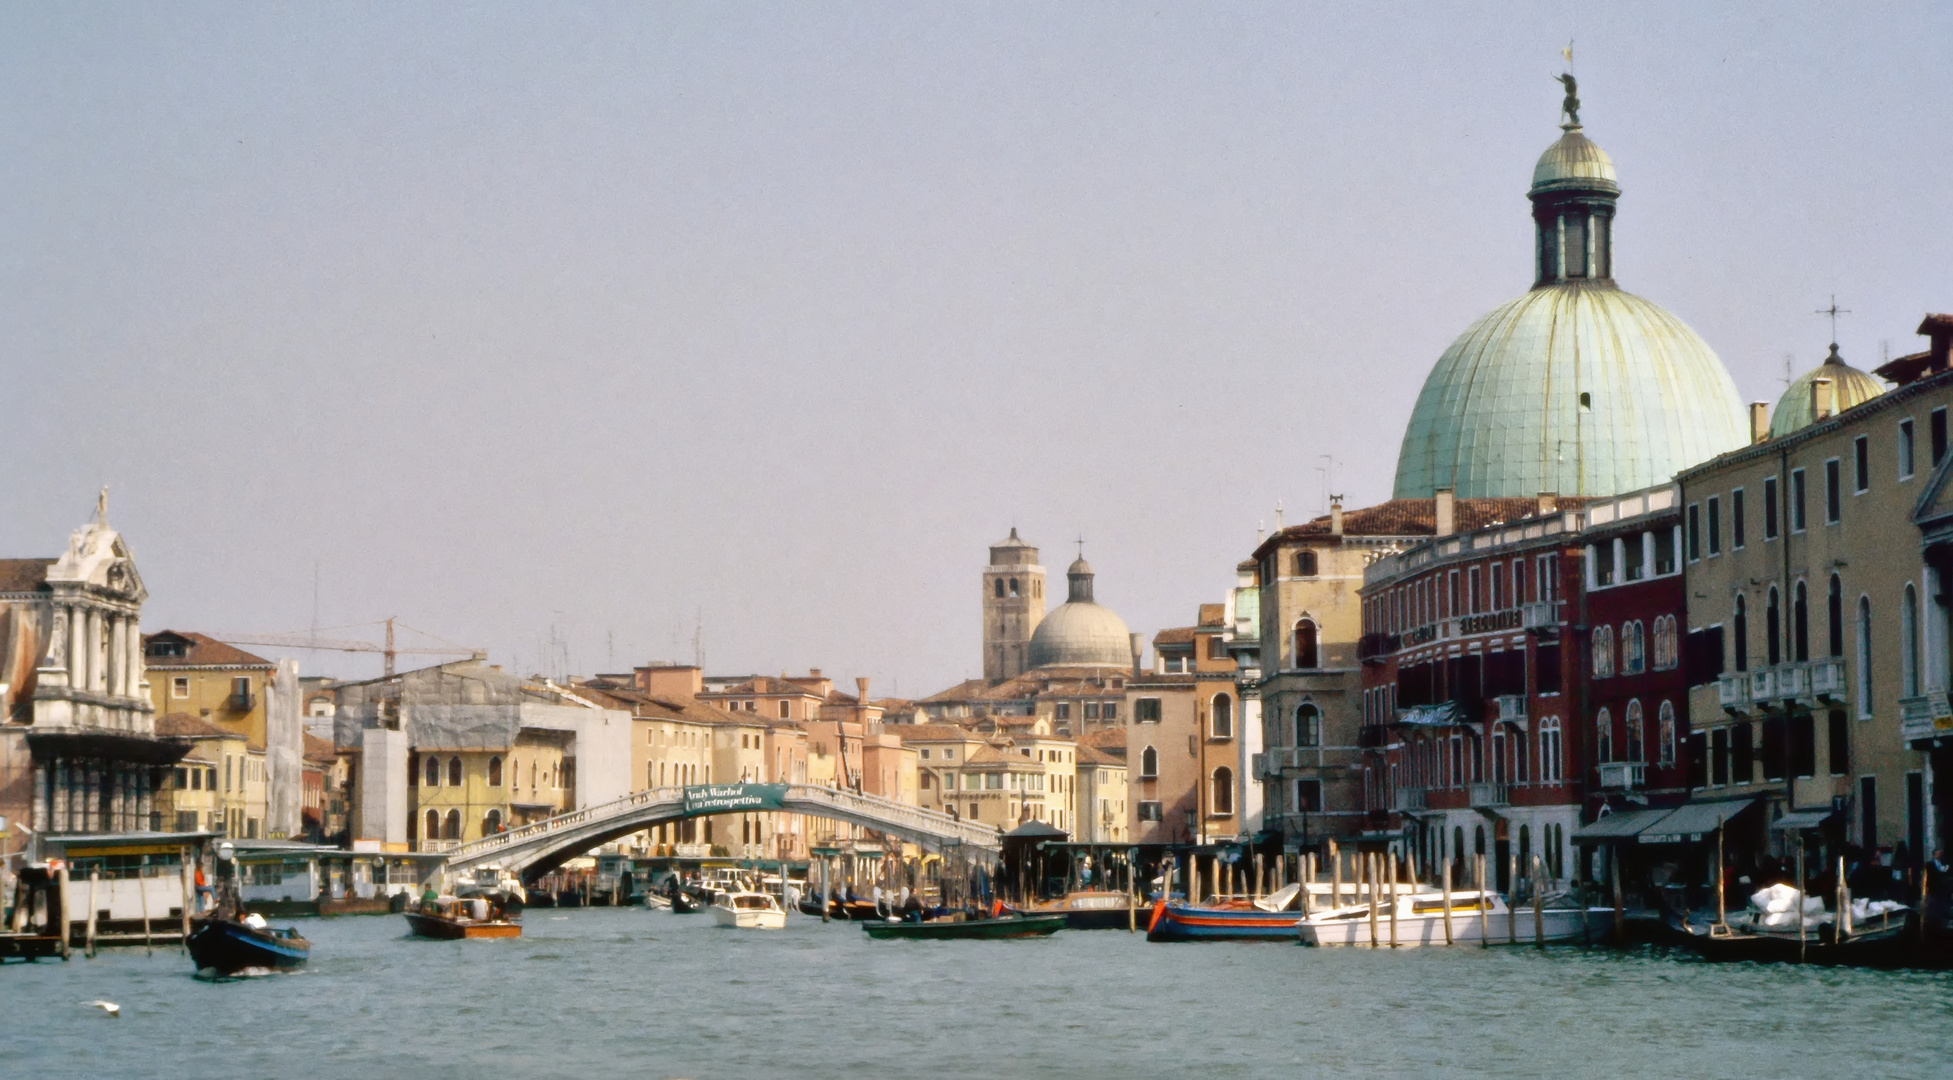 1990 damals in Venedig